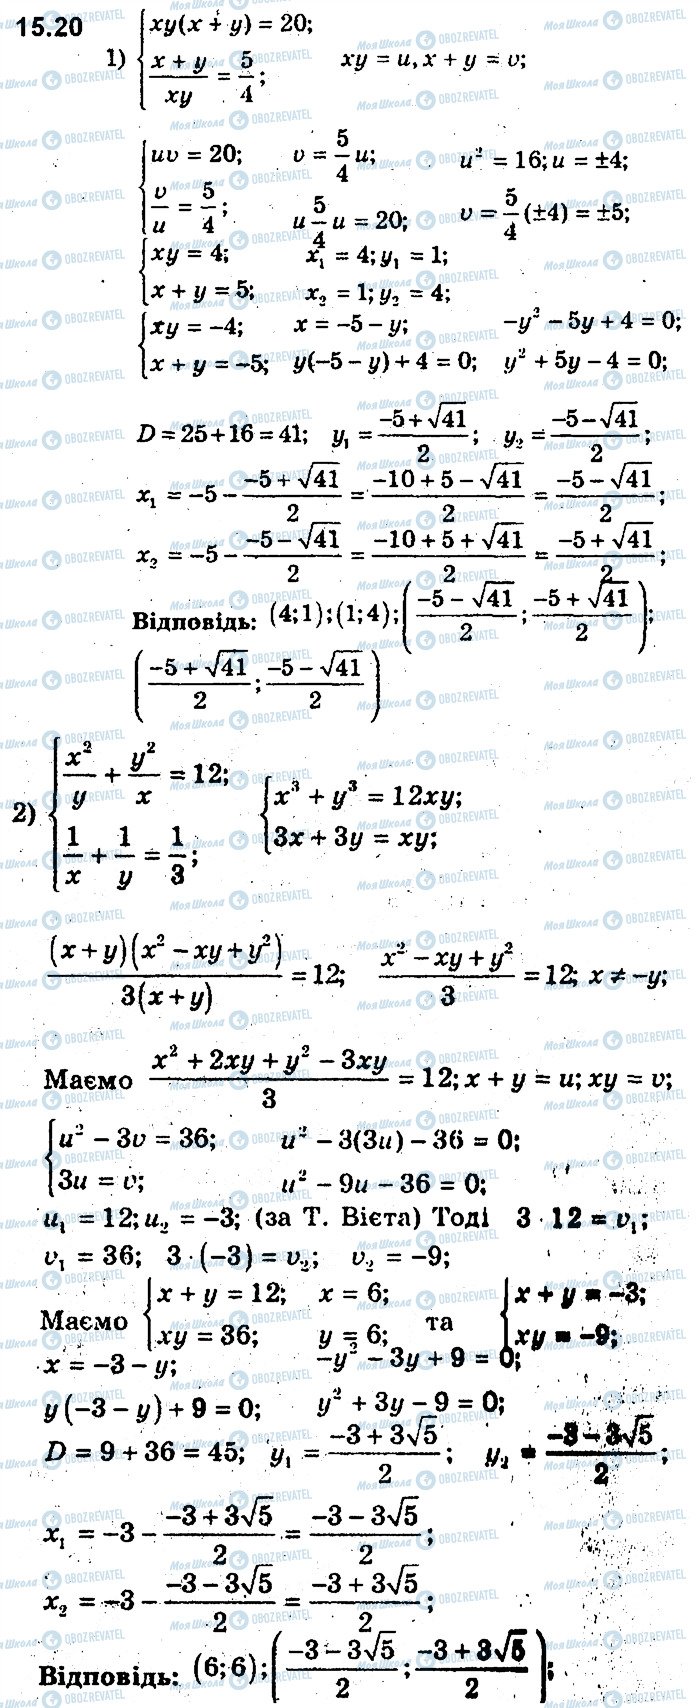 ГДЗ Алгебра 9 класс страница 20